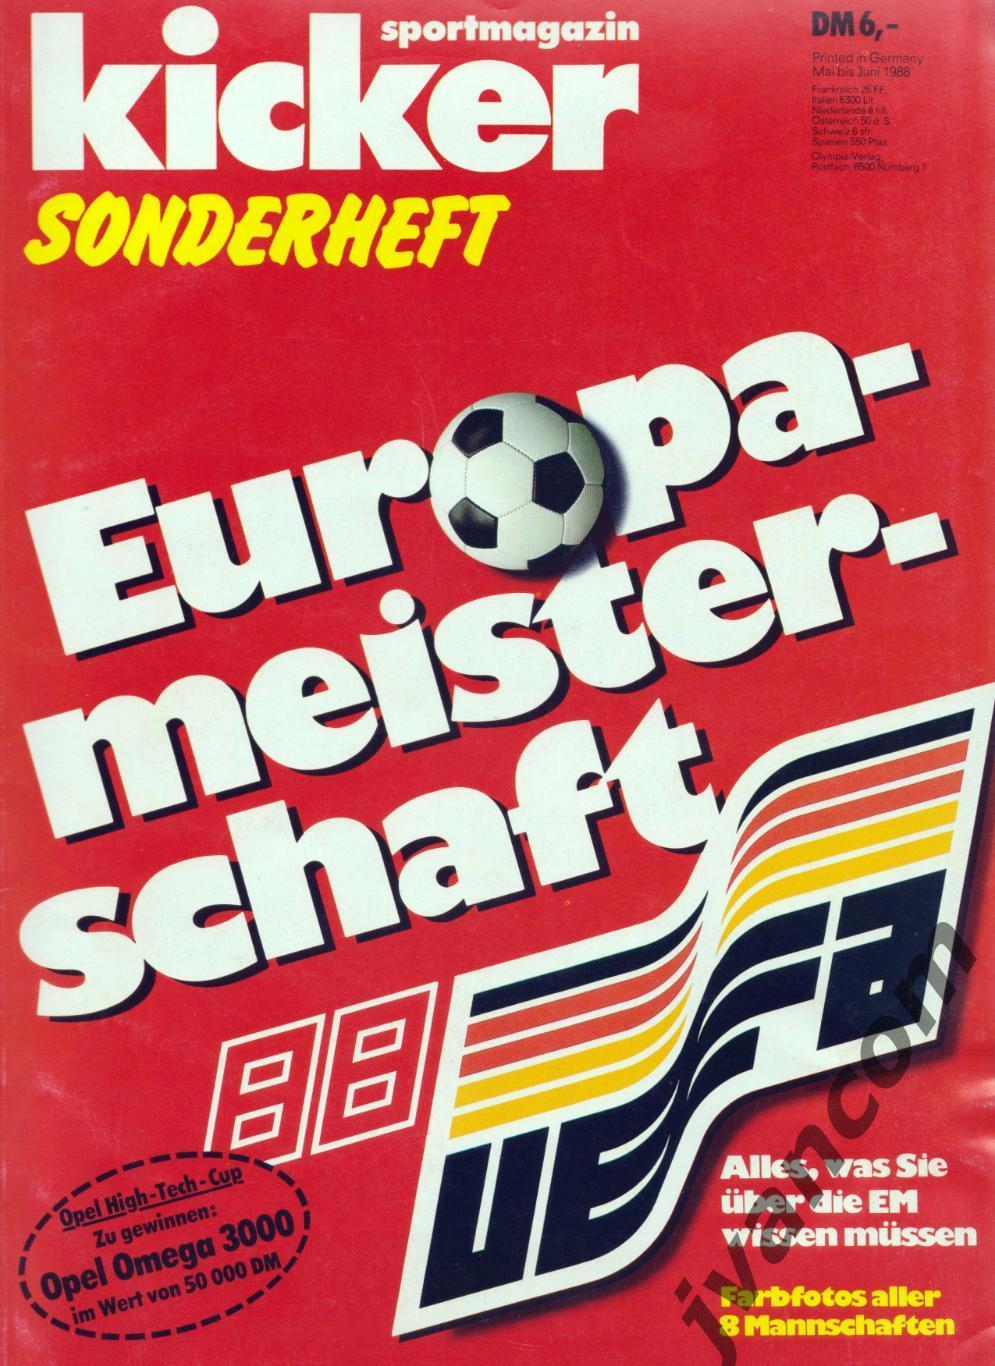 KICKER SONDERHEFT. Чемпионат Европы по футболу 1988 года. Превью участников.